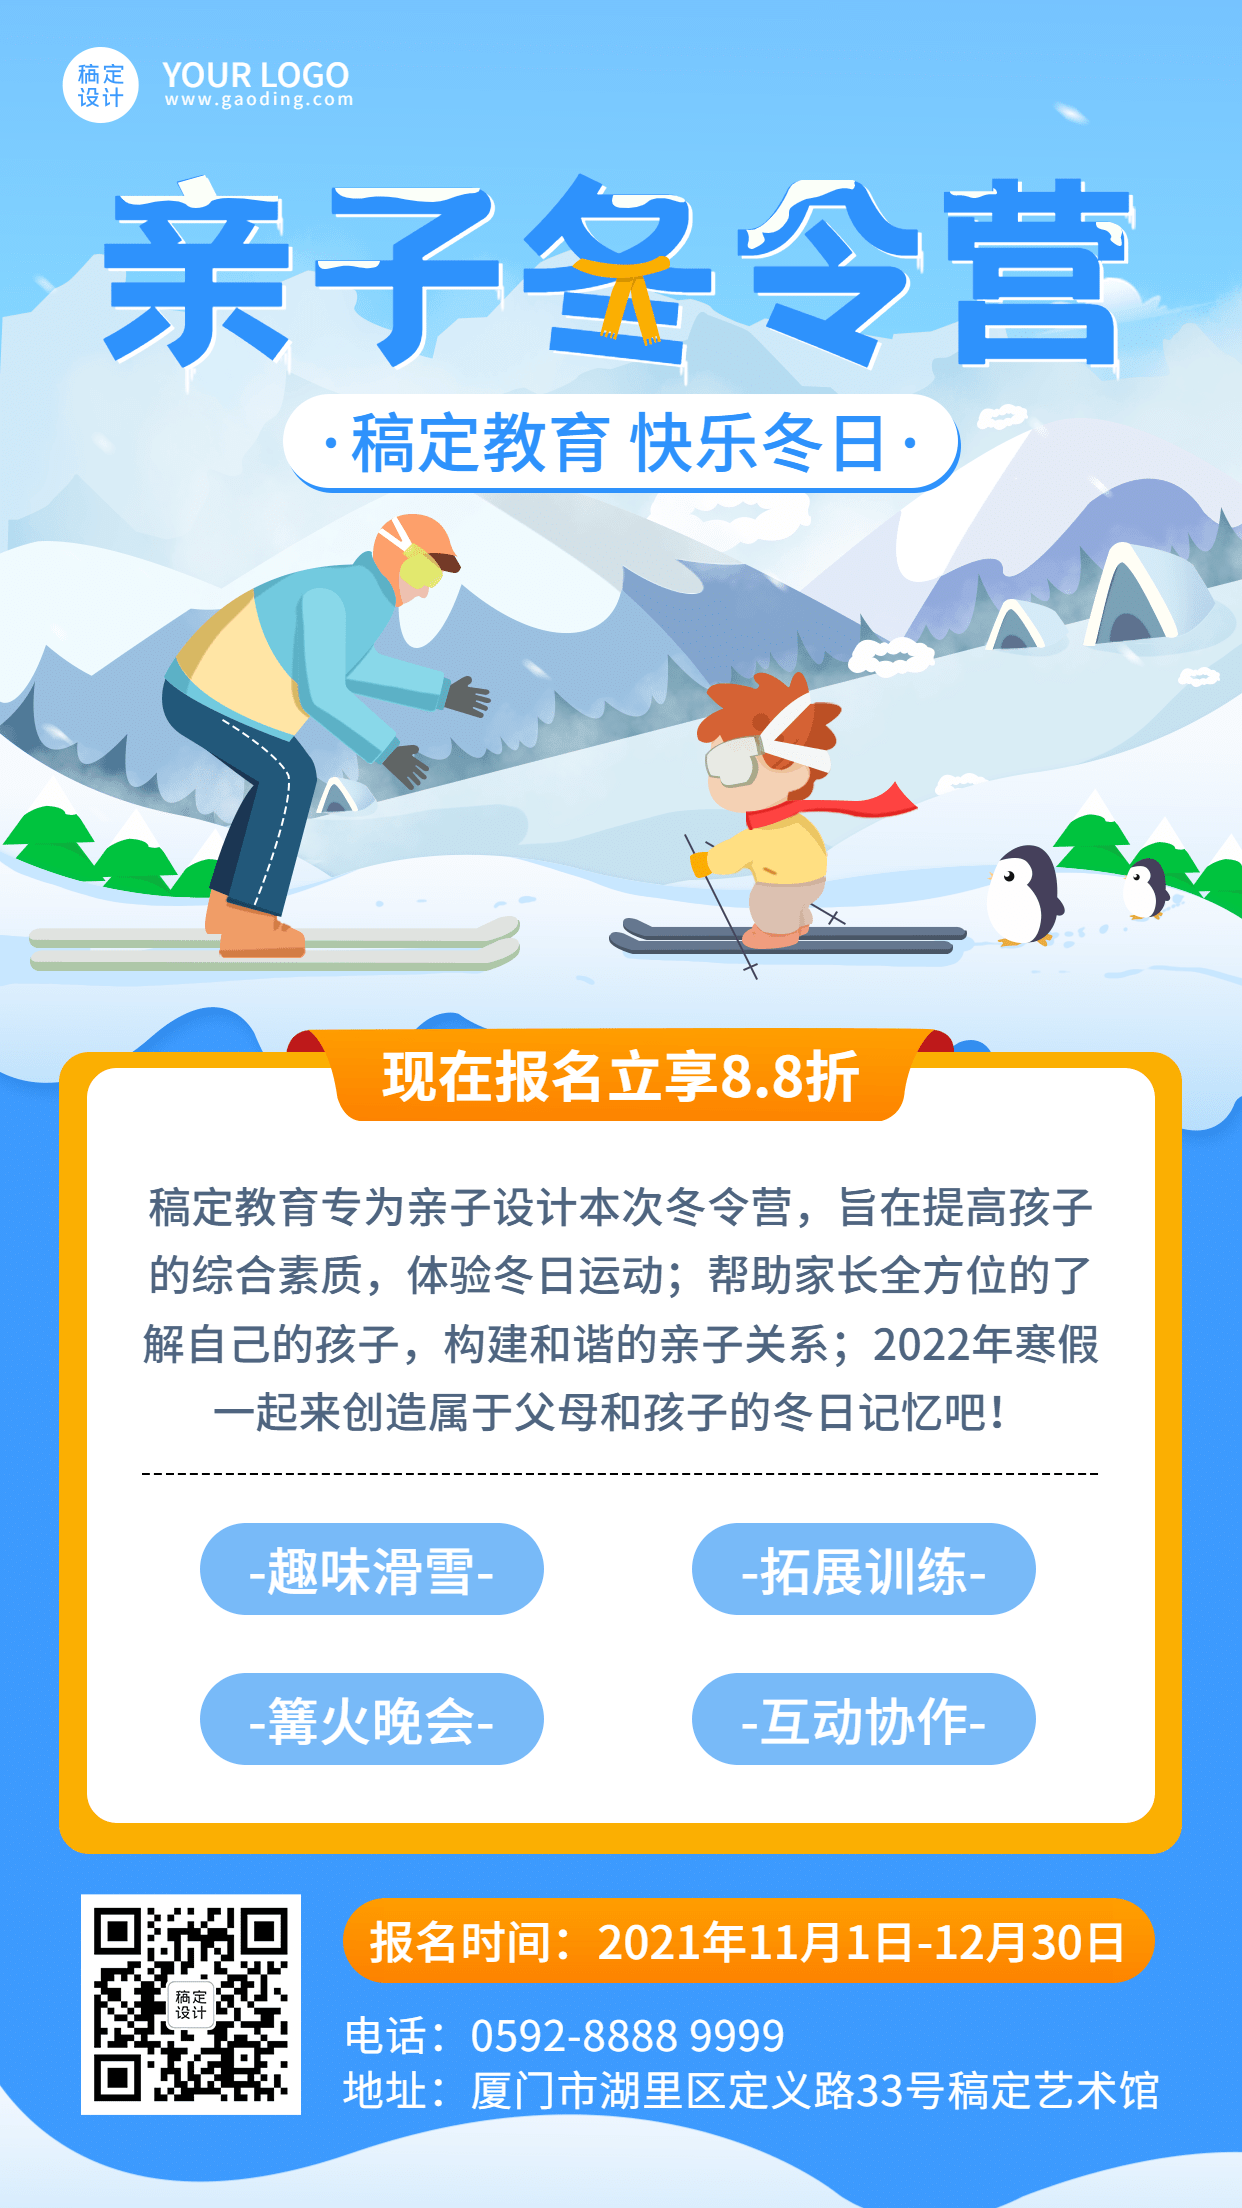 亲子冬令营滑雪课程招生竖版海报预览效果